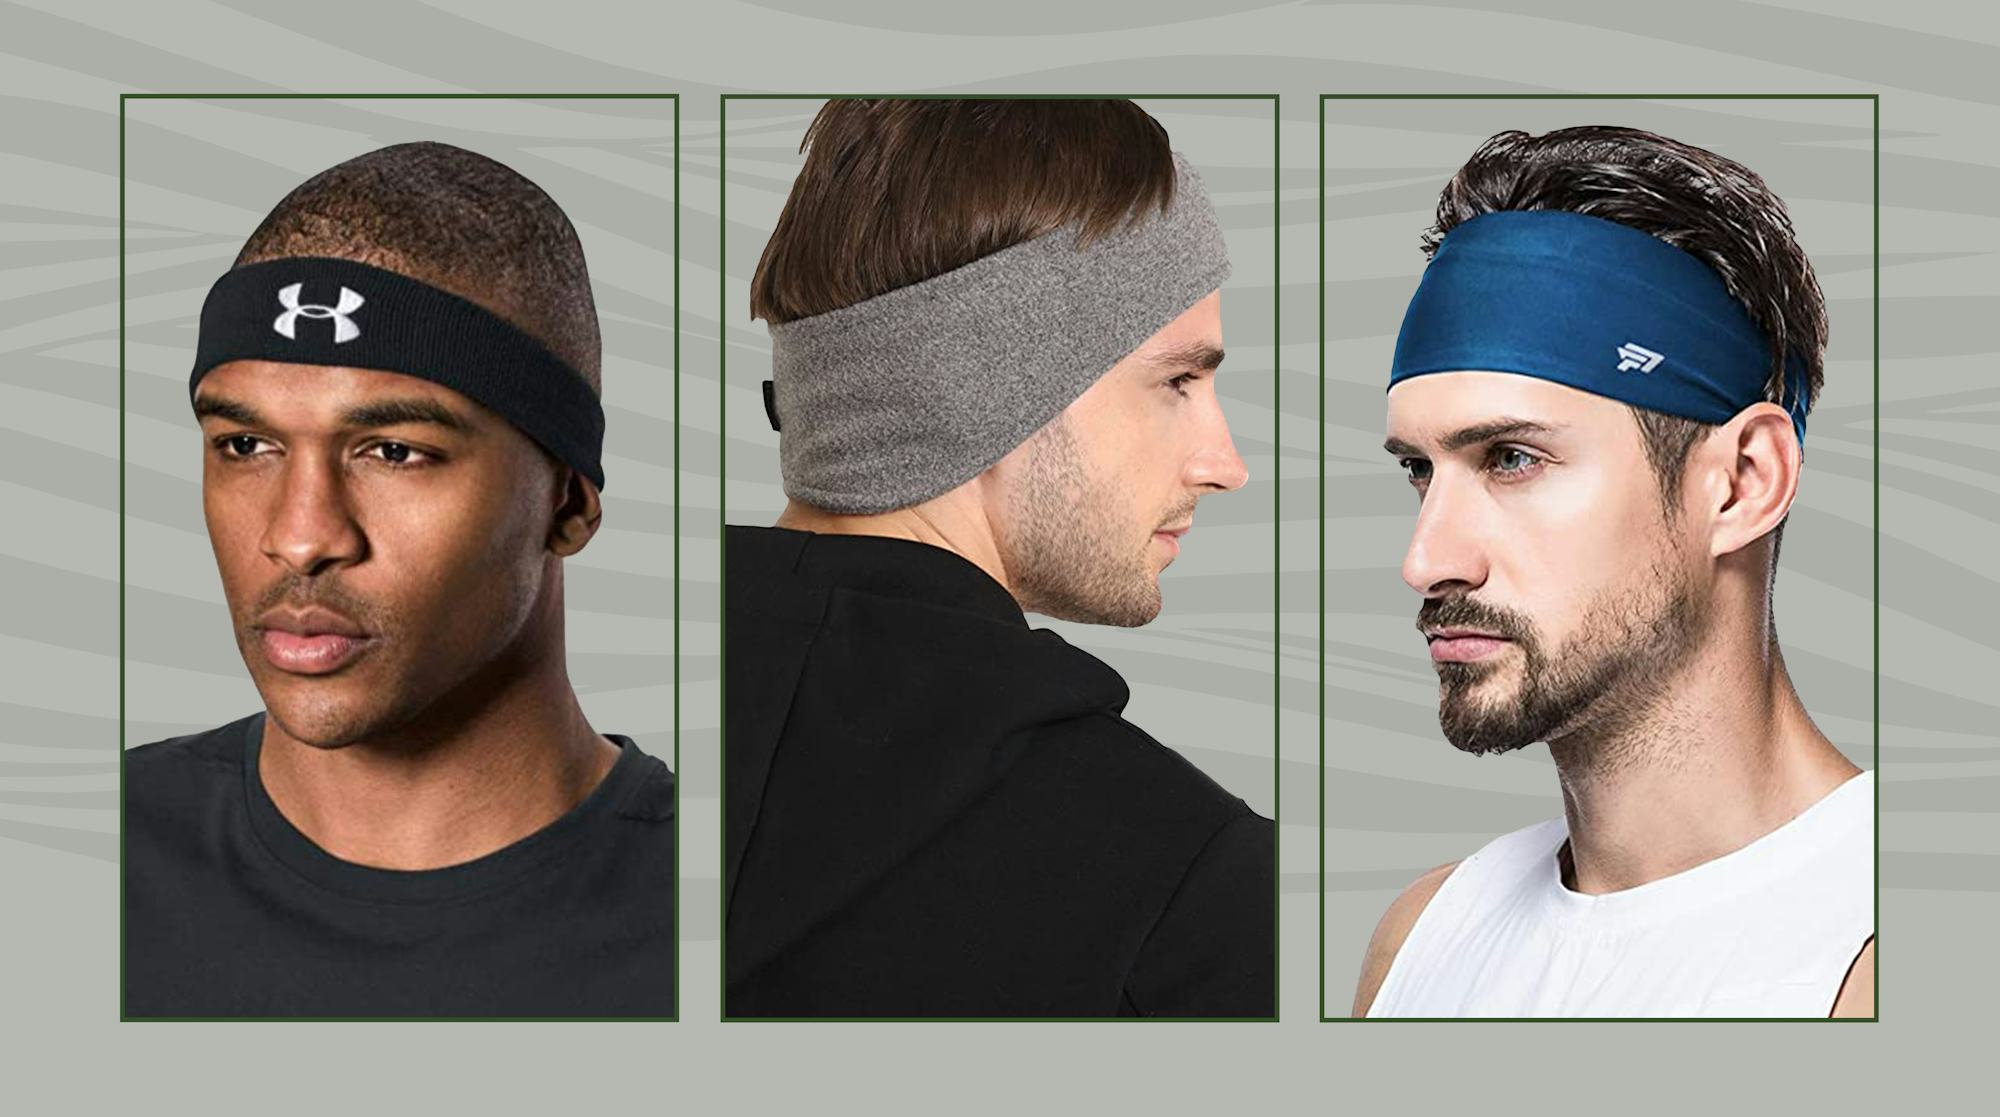 6986c5e2 A9e5 46f6 Befd Fc5c415ceaf1 Best Headbands For Men ?w=1000&fit=crop&crop=faces&auto=format%2Ccompress&q=50&dpr=2